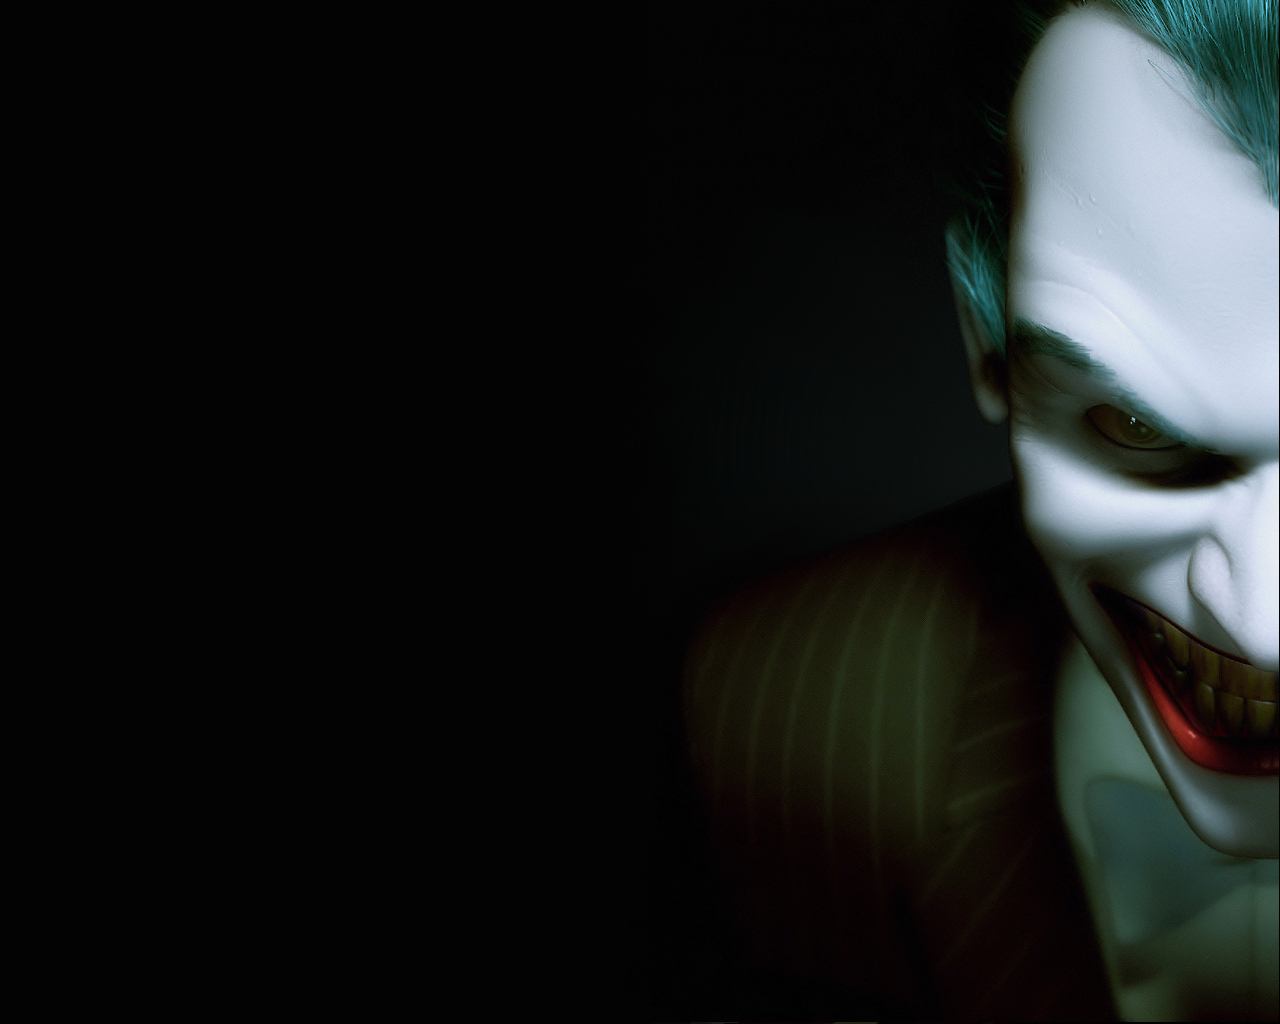 Free download The Joker The Joker Wallpaper 1420997 [1280x1024] for your  Desktop, Mobile & Tablet | Explore 76+ The Joker Wallpapers | The Dark  Knight Joker Wallpaper, Joker The Dark Knight Wallpaper, The Joker Wallpaper